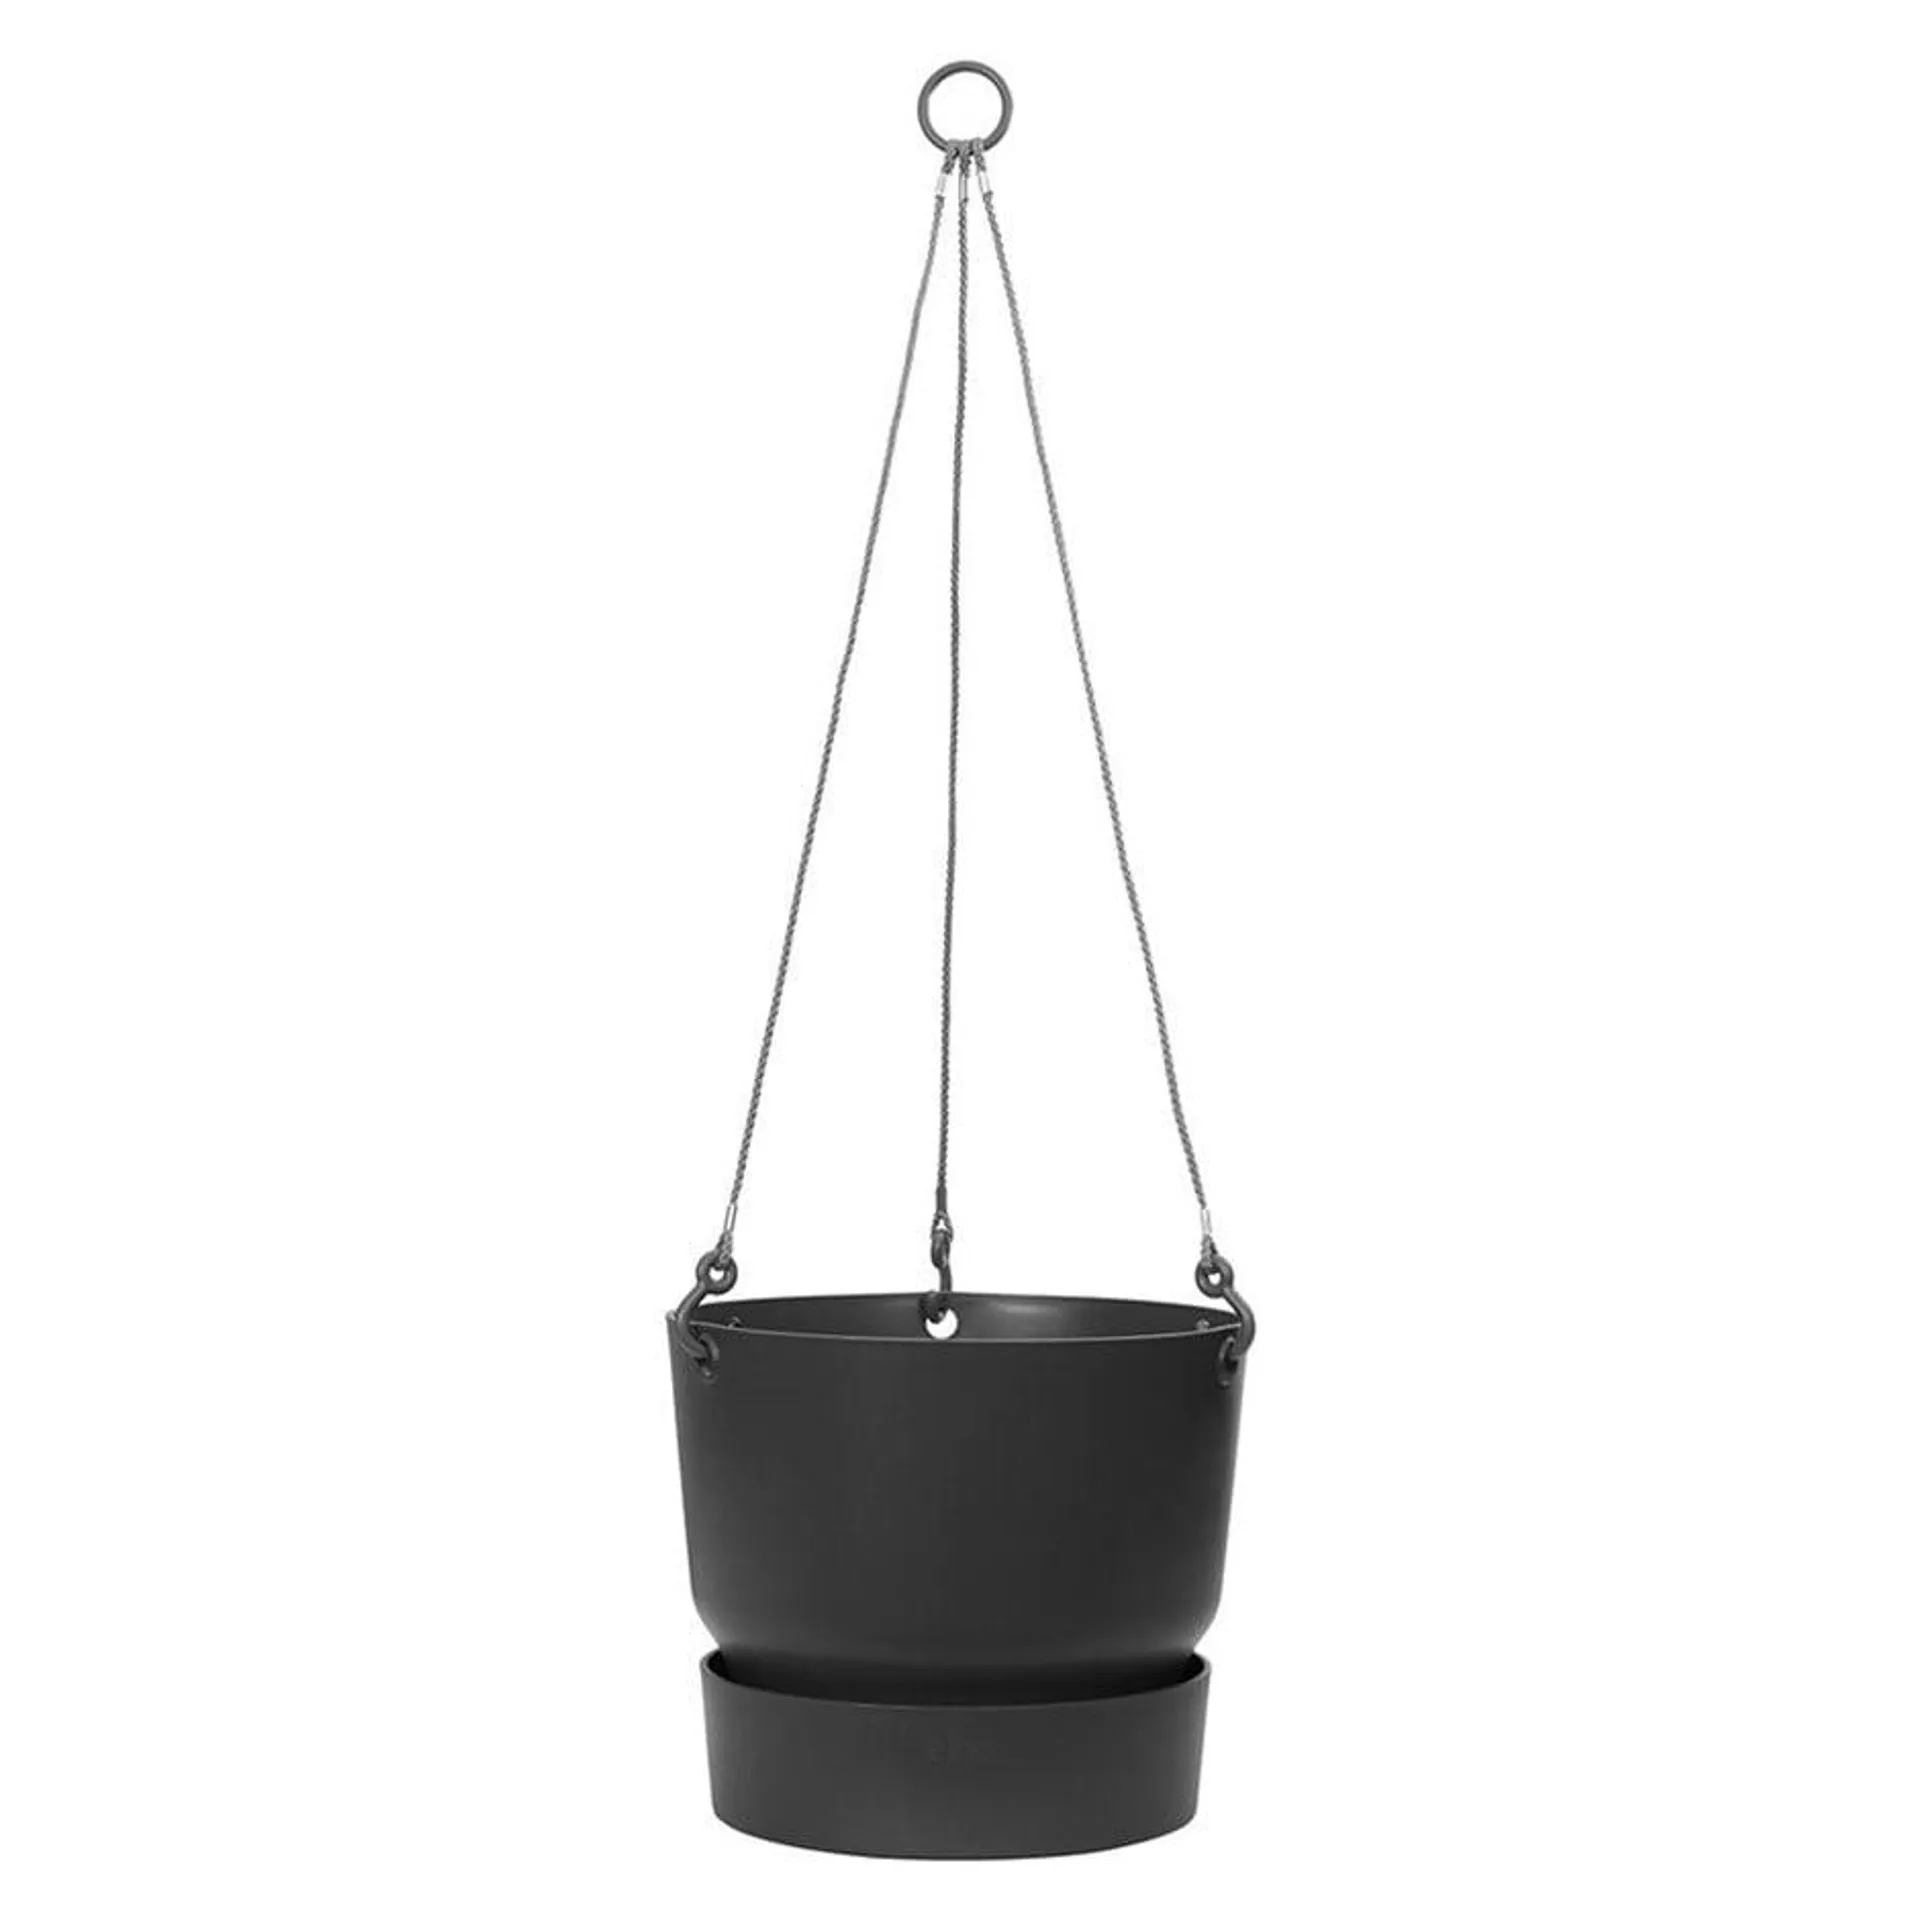 Greenville hanging basket black